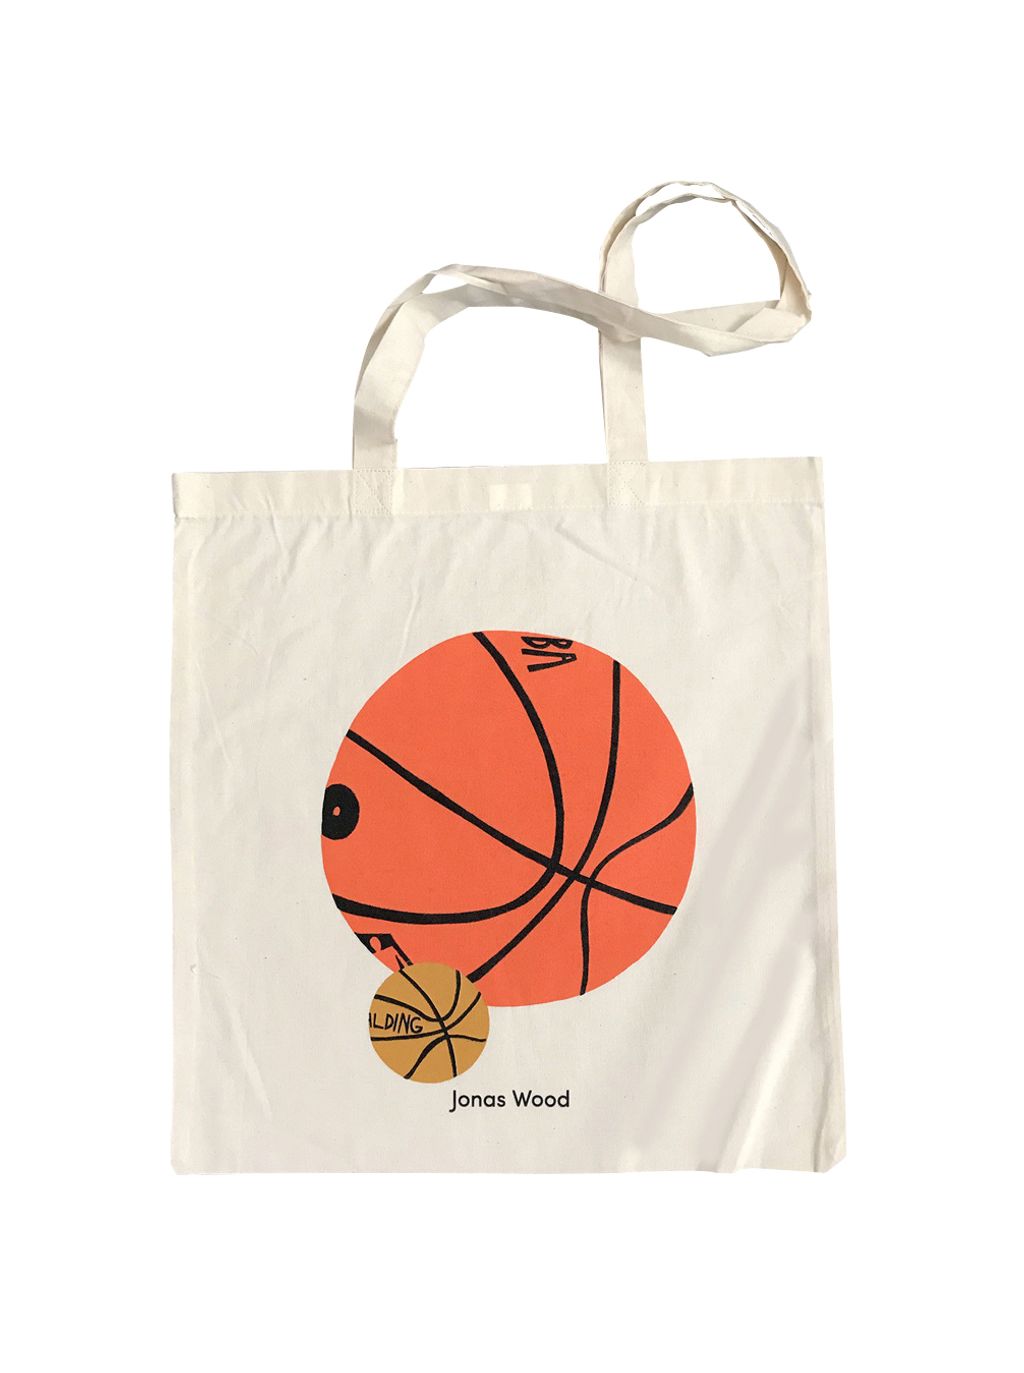 Jonas Wood Basketball Tote Bag1.jpg